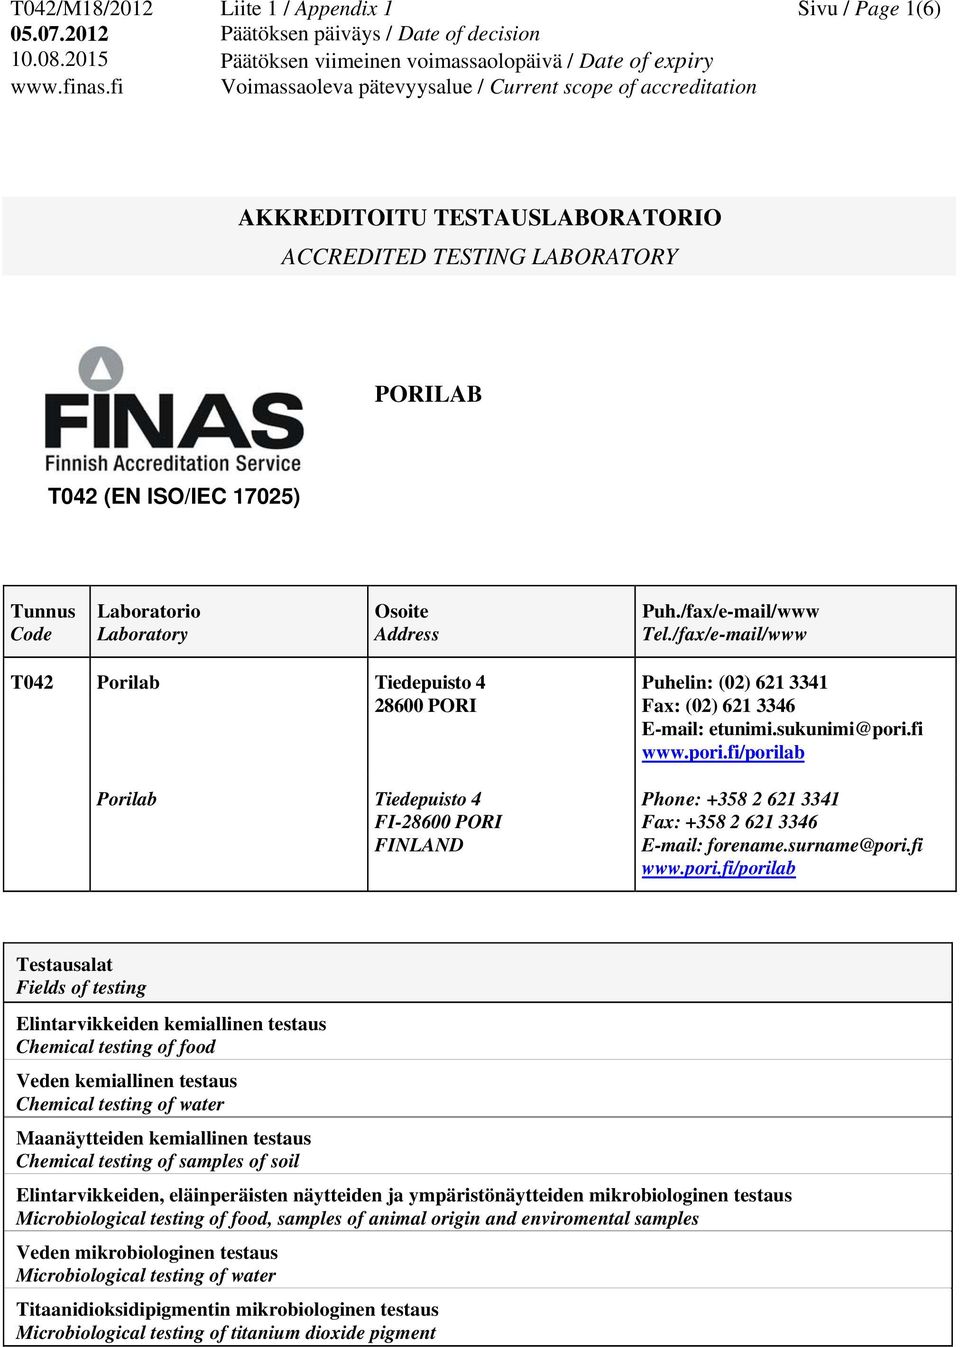 pori.fi/porilab Phone: +358 2 621 3341 Fax: +358 2 621 3346 E-mail: forename.surname@pori.fi www.pori.fi/porilab Testausalat Fields of testing Elintarvikkeiden kemiallinen testaus Chemical testing of